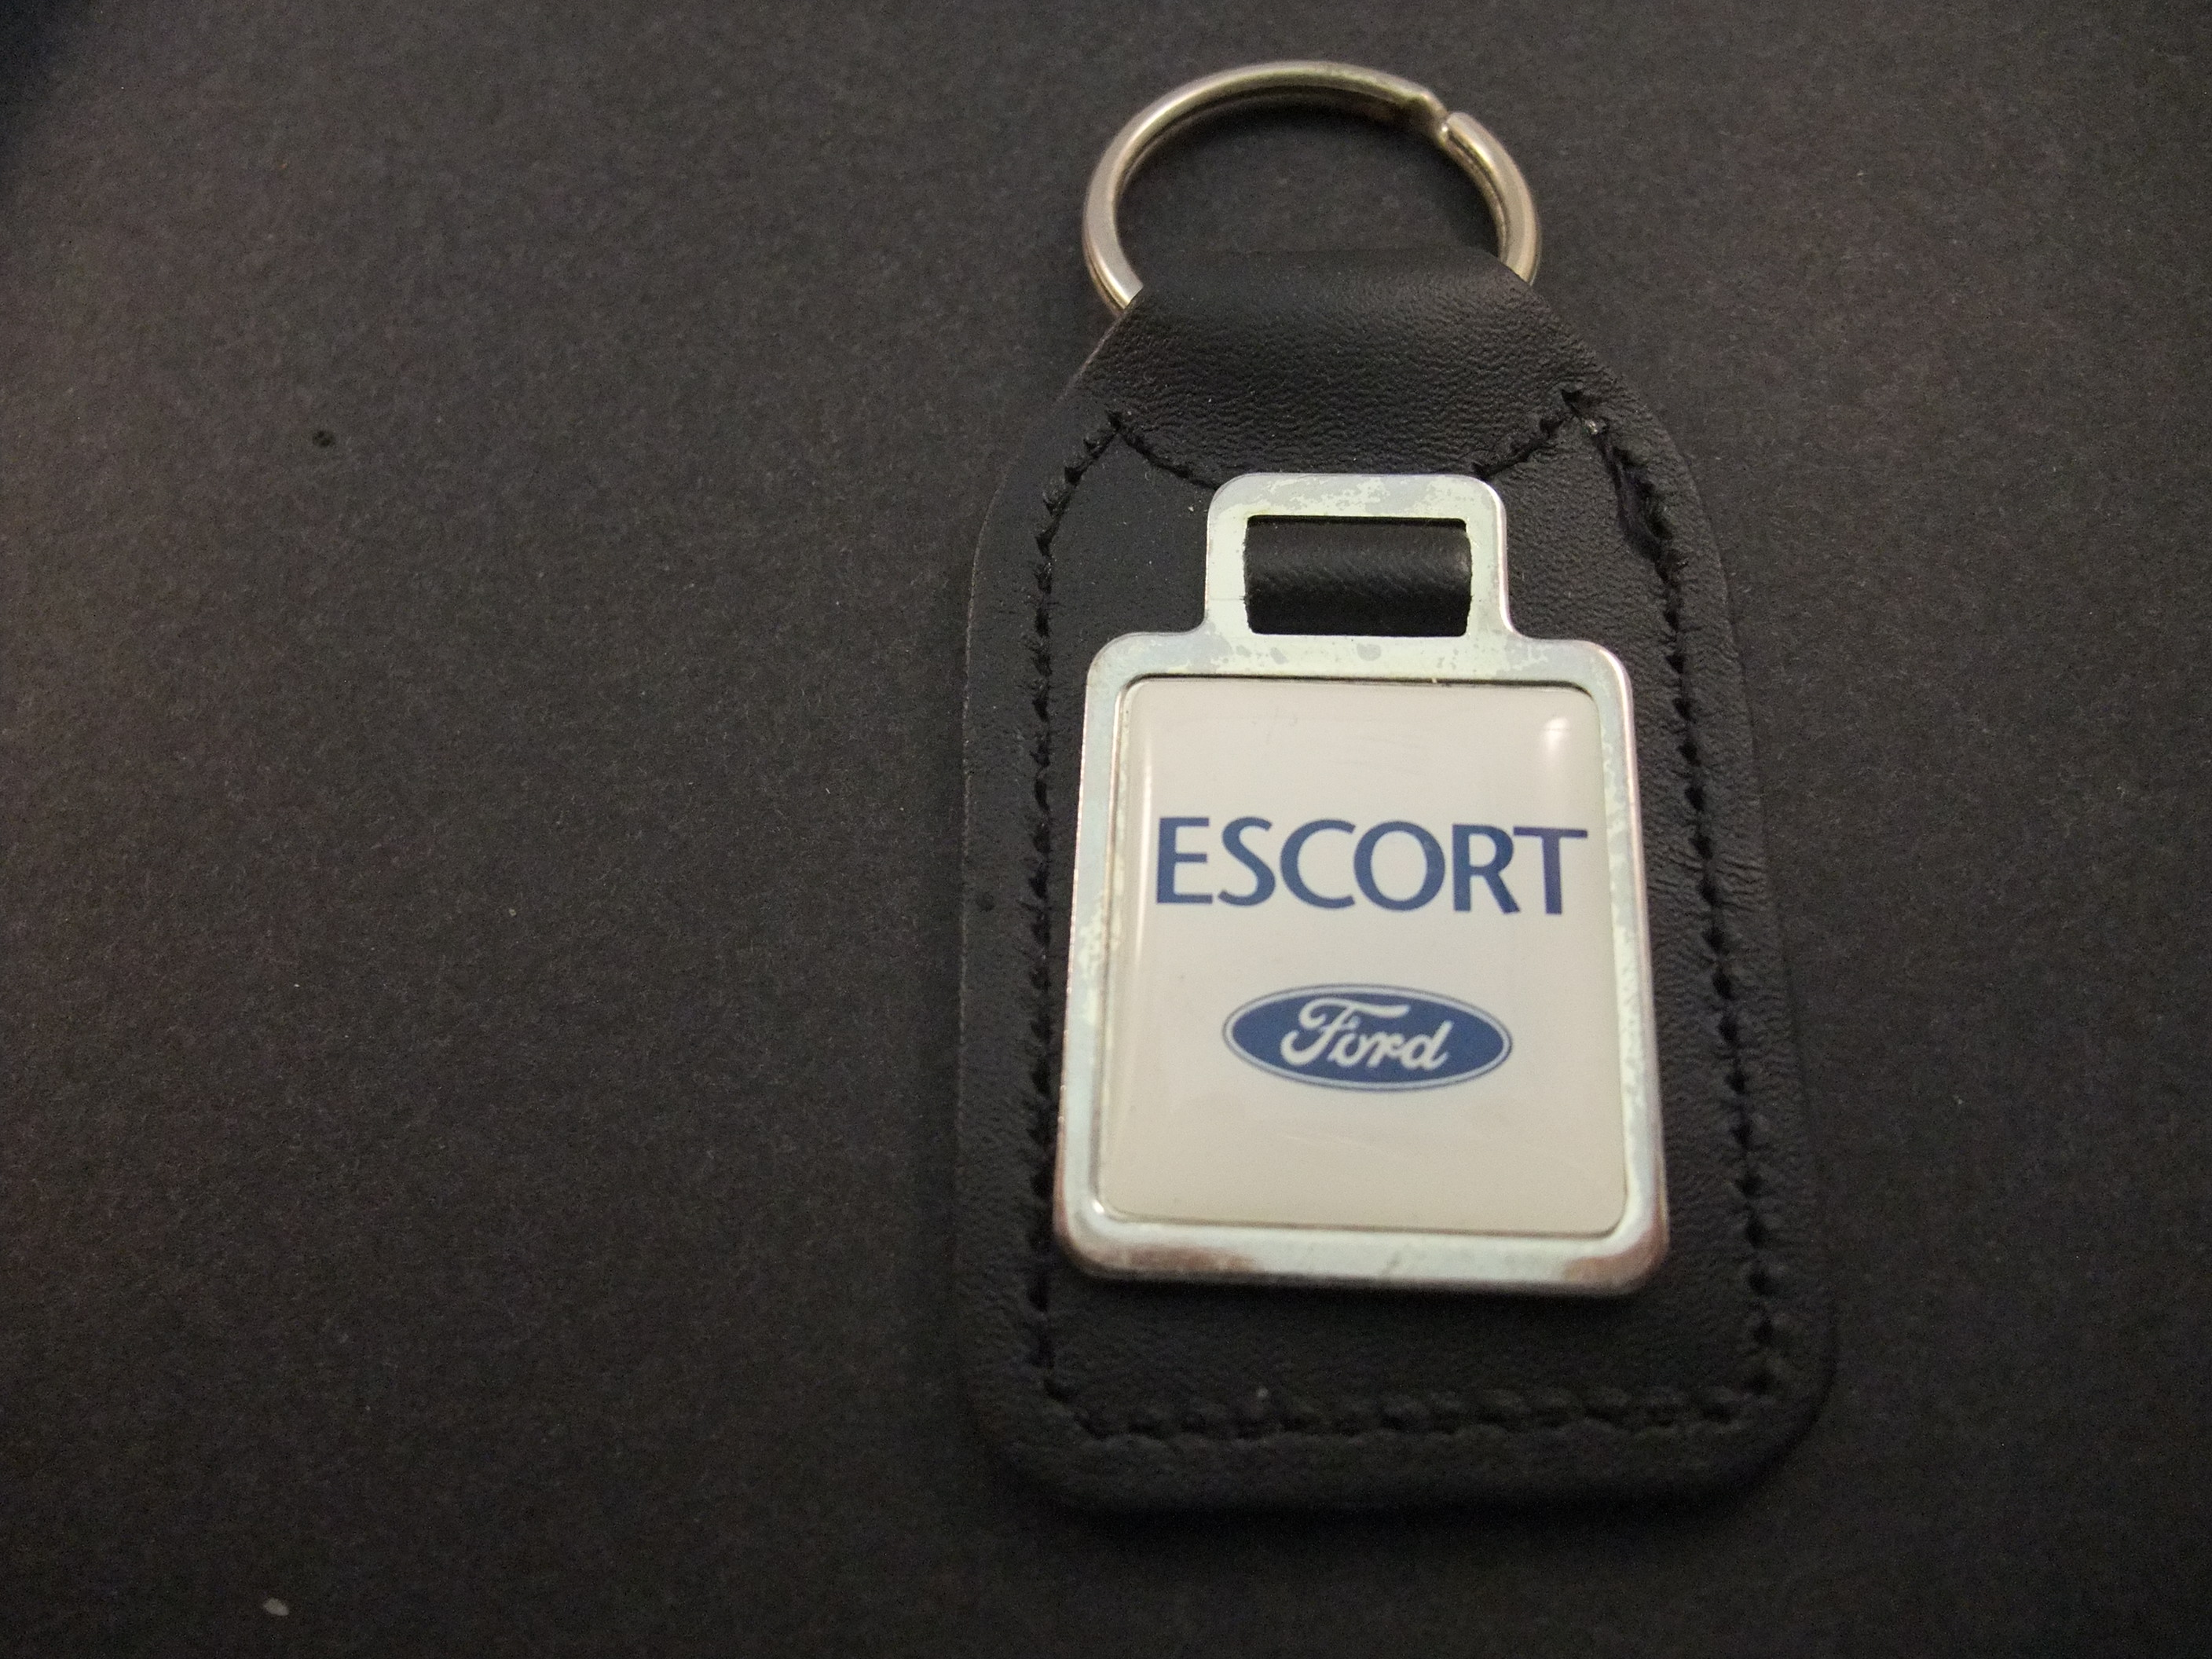 Ford Escort compact klasse model sleutelhanger